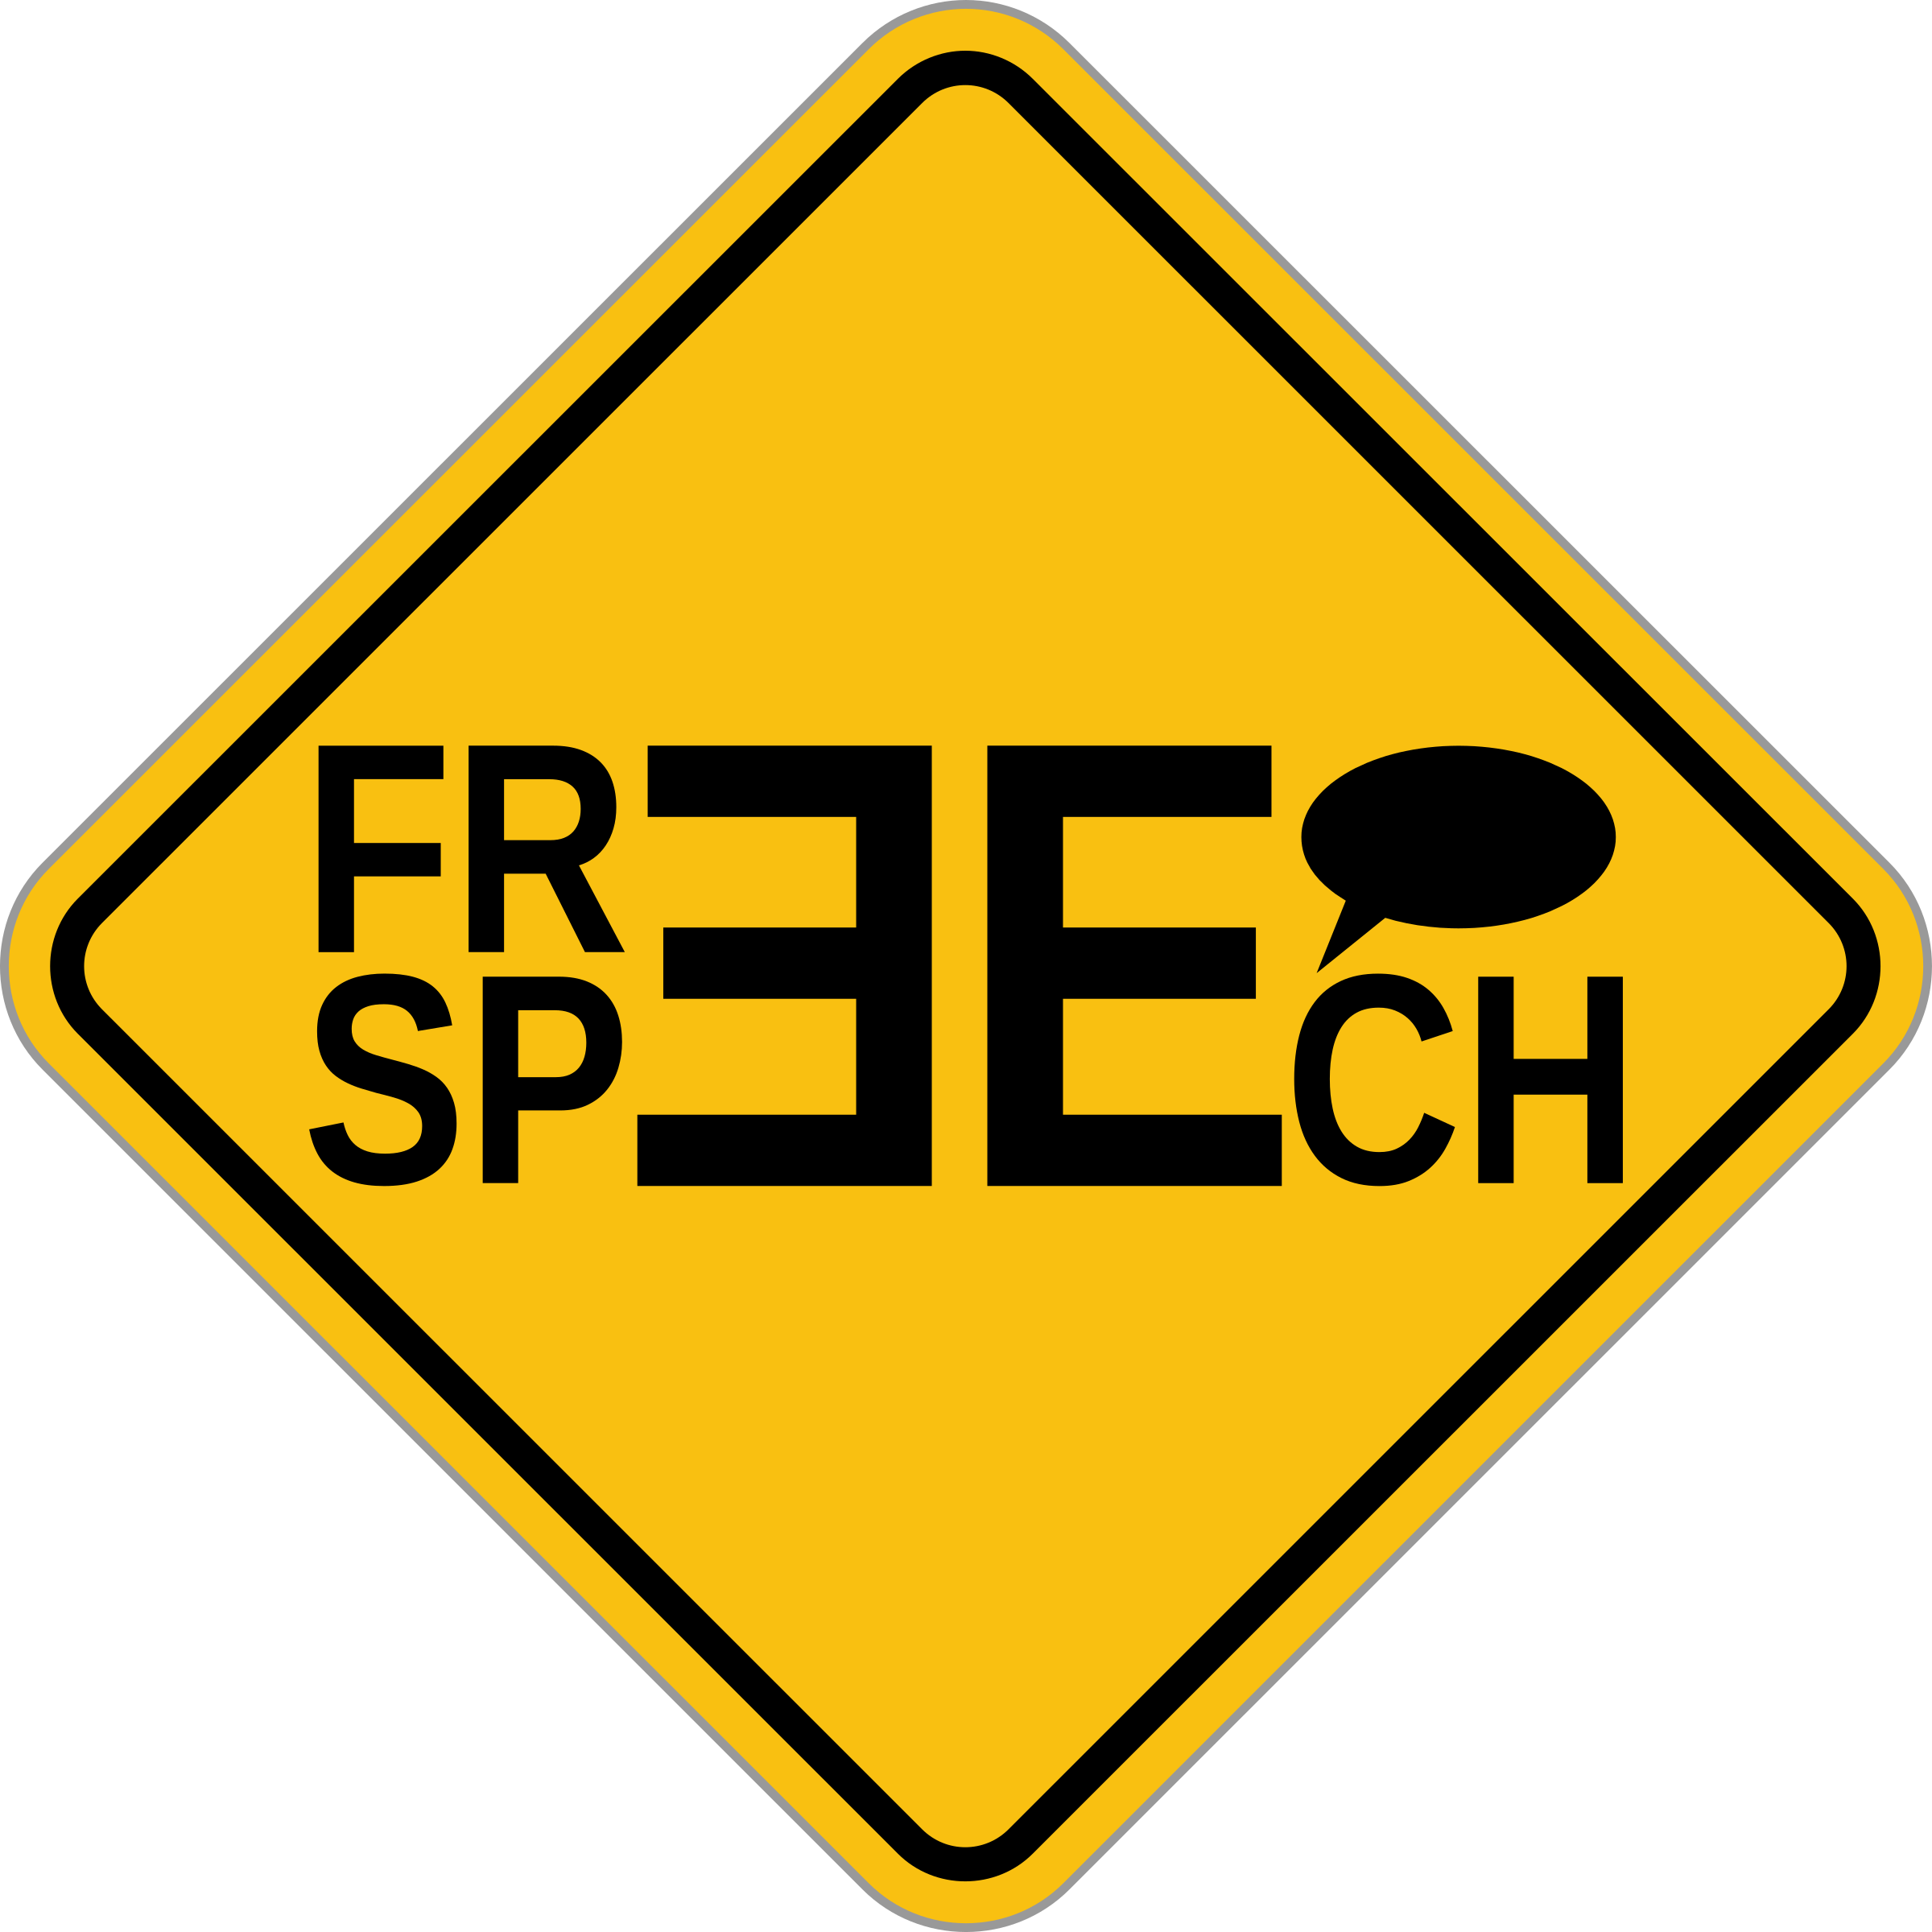 Free Speech - Construction Signs Clip Art (2400x2400)